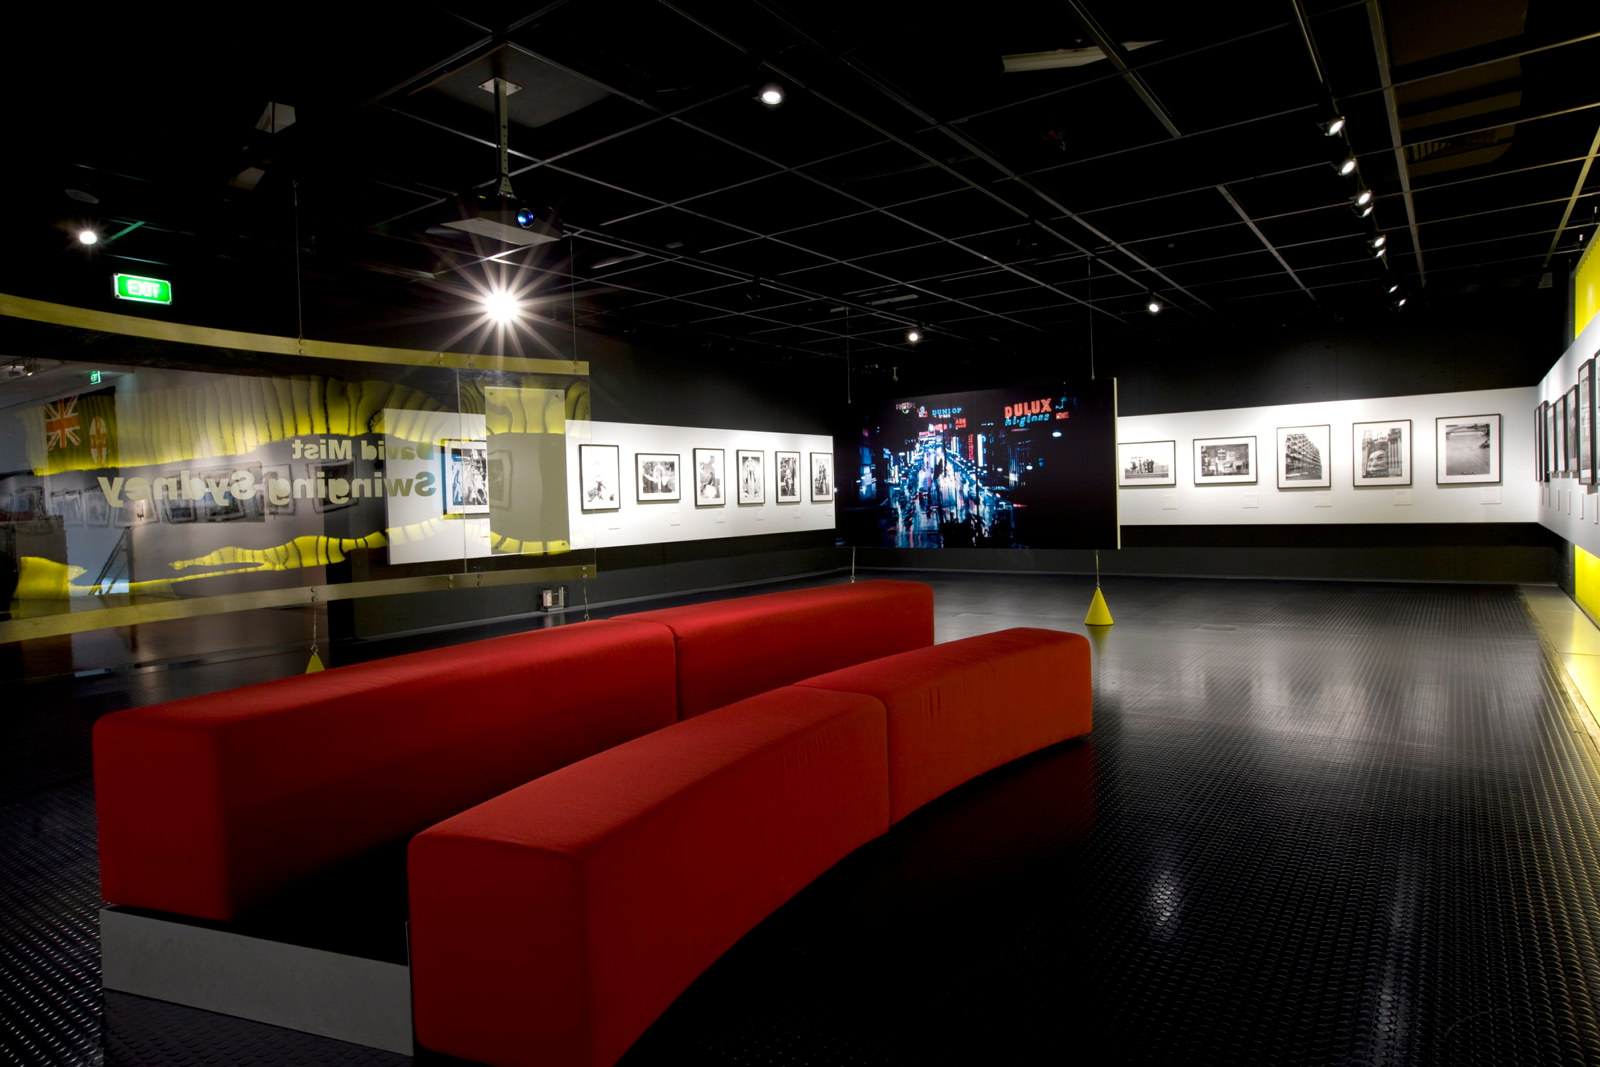 David Mist: Swinging Sydney exhibition installation view